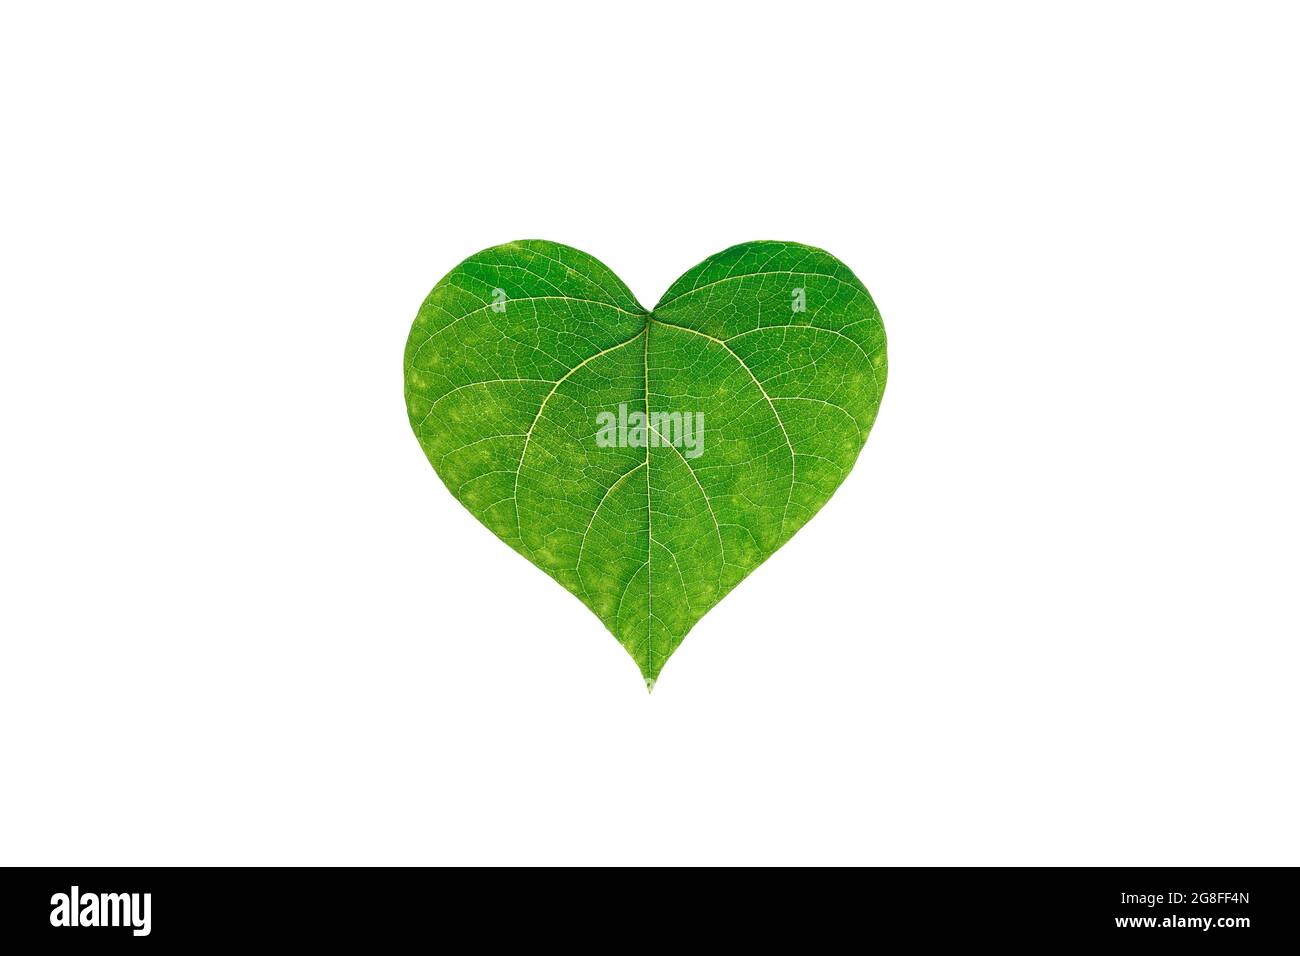 Les congés verts sont disposés en forme de coeur sur un fond blanc isolé. Le concept de l'amour pour la nature. Protection écologique, protection de la nature et de l'écologie. Mise au point sélective. Espace de copie. Vue de dessus. Banque D'Images